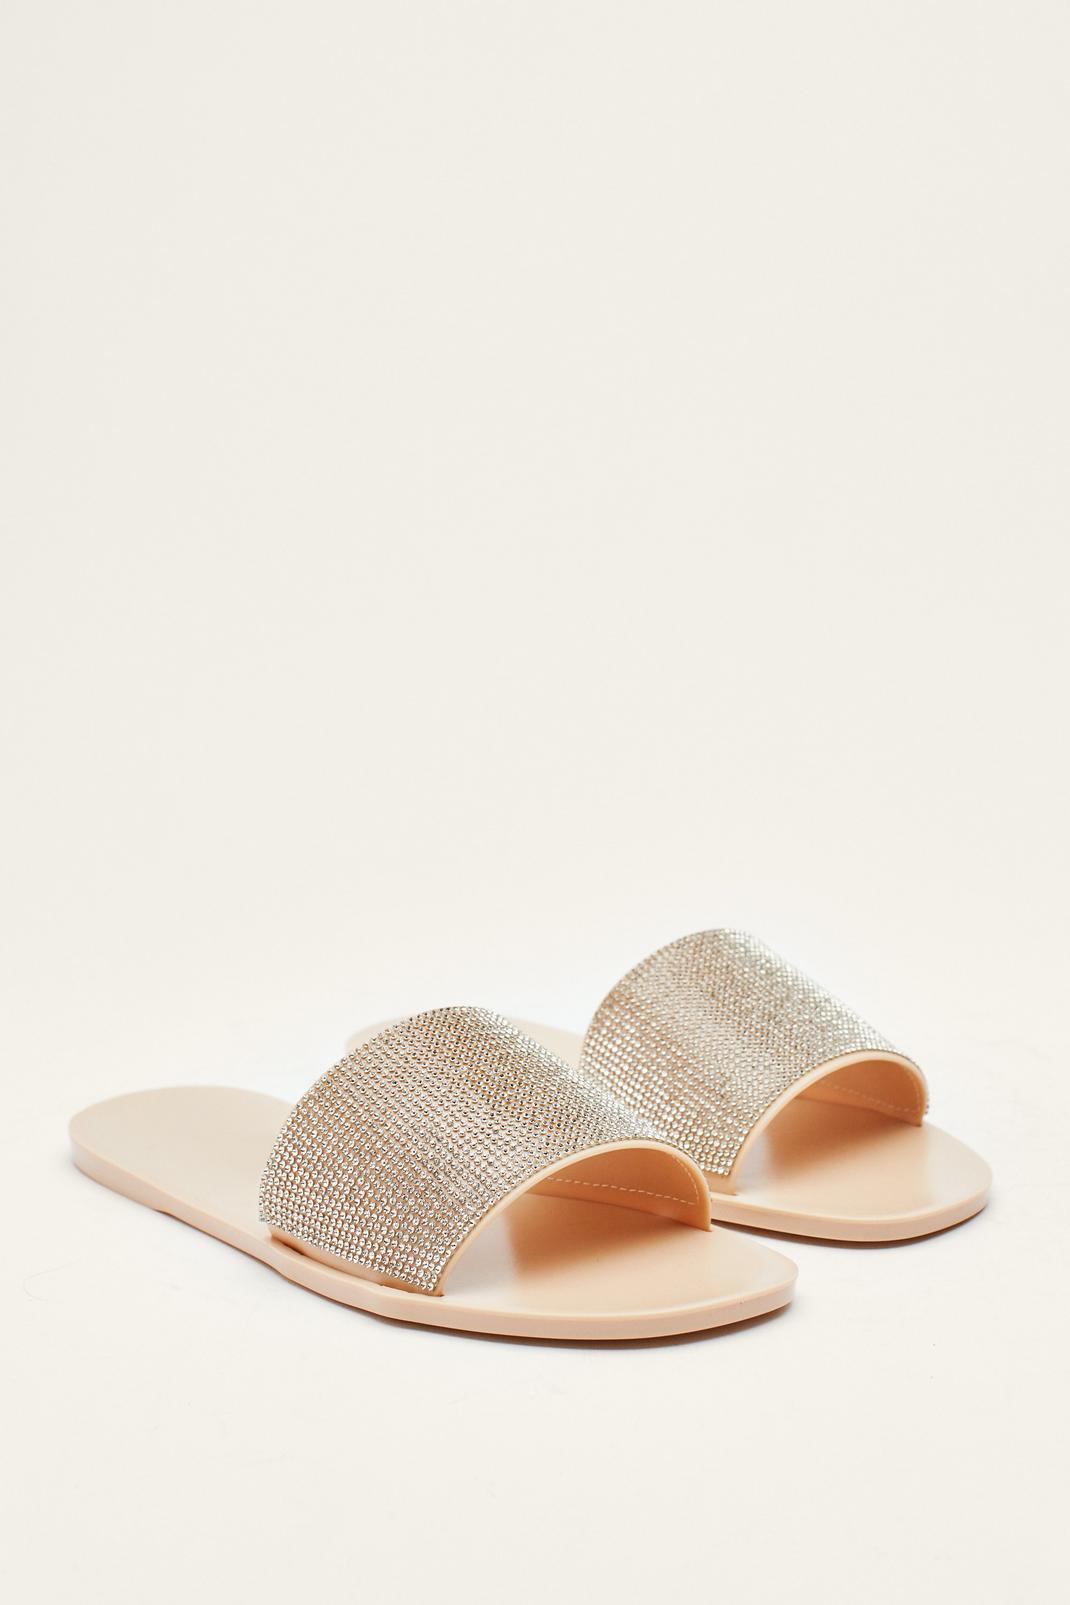 Diamante Square Toe Flat Sandals